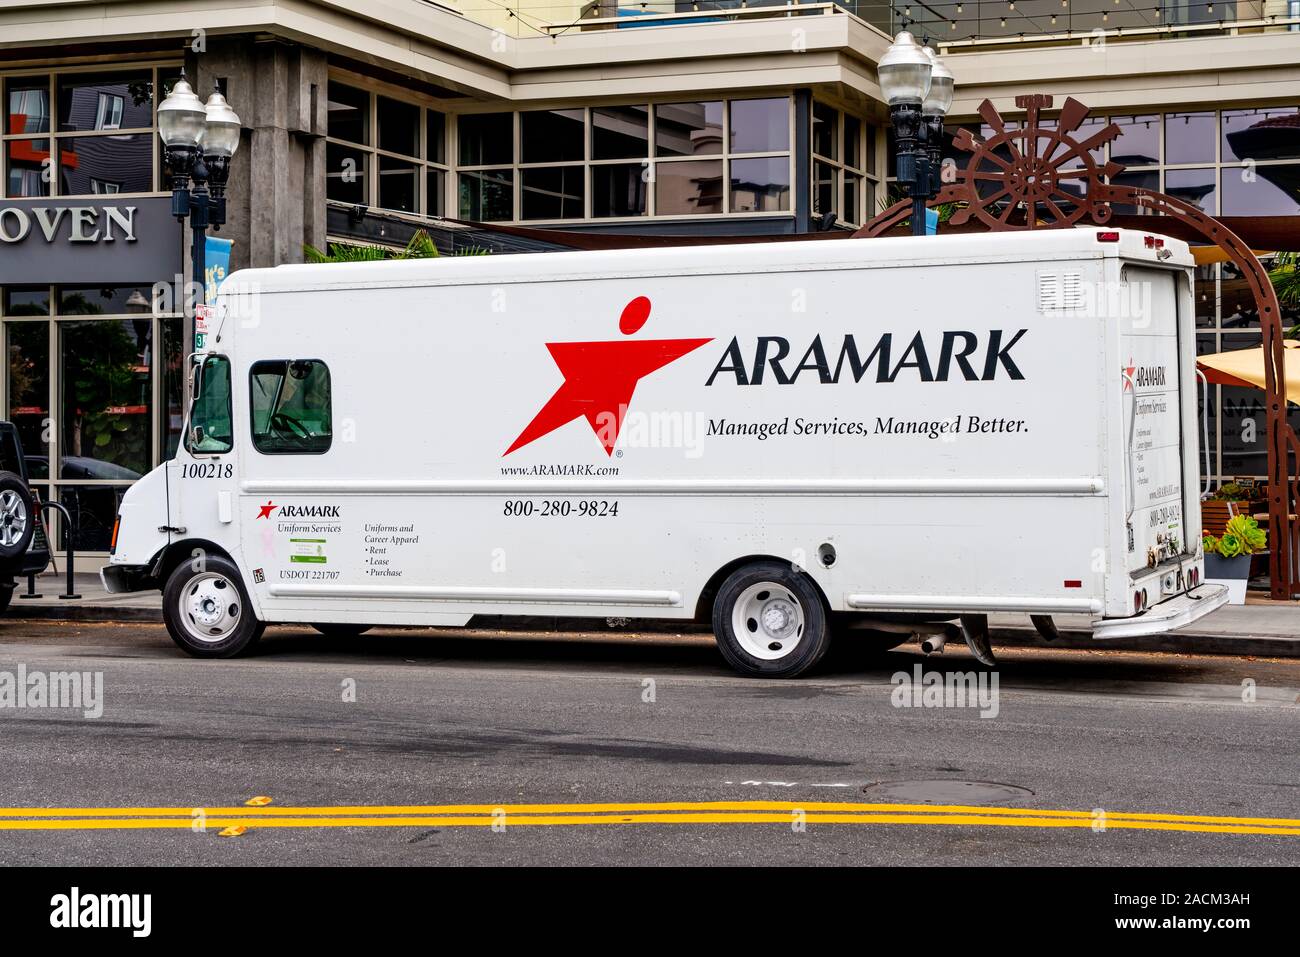 Agosto 29, 2019 / Sunnyvale CA / USA - Aramark vehículo haciendo entregas en South San Francisco Bay Area, ARAMARK Corporation es una comida americana serv Foto de stock